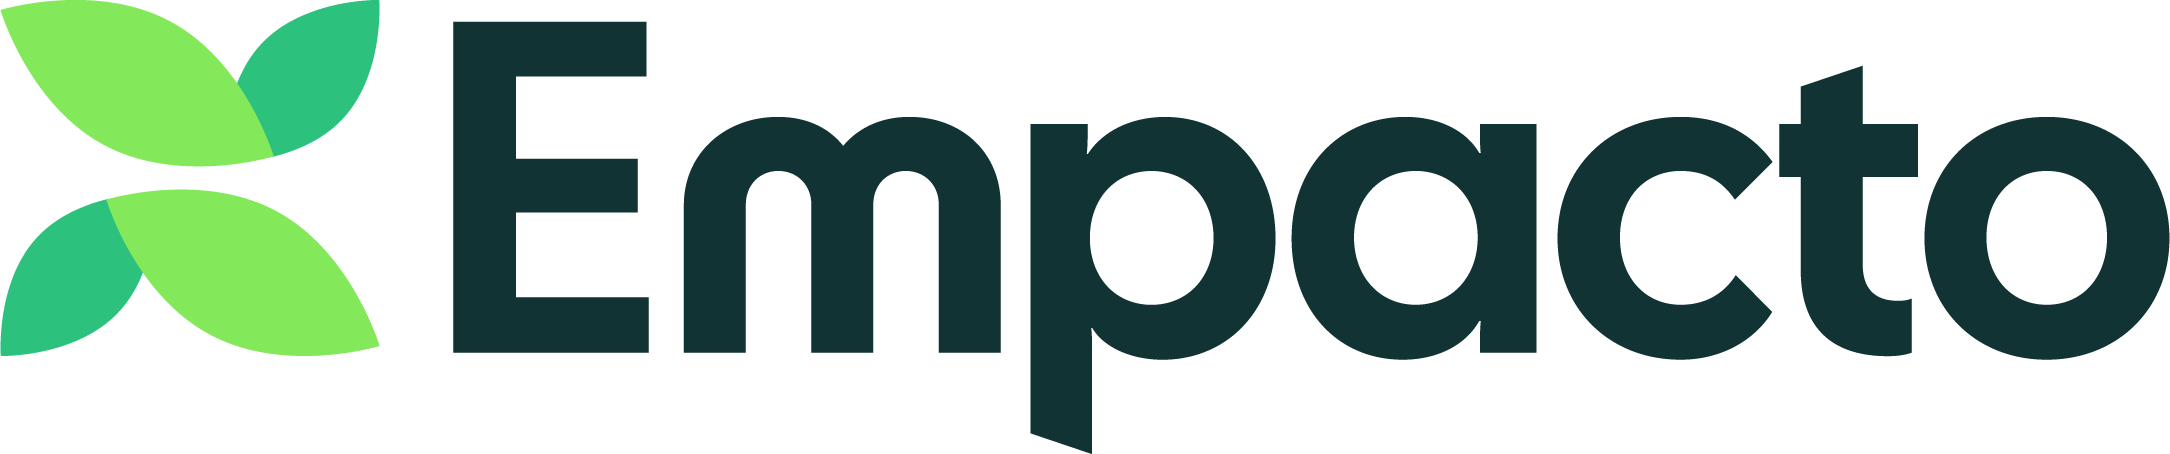 Empacto Logo Fullsize